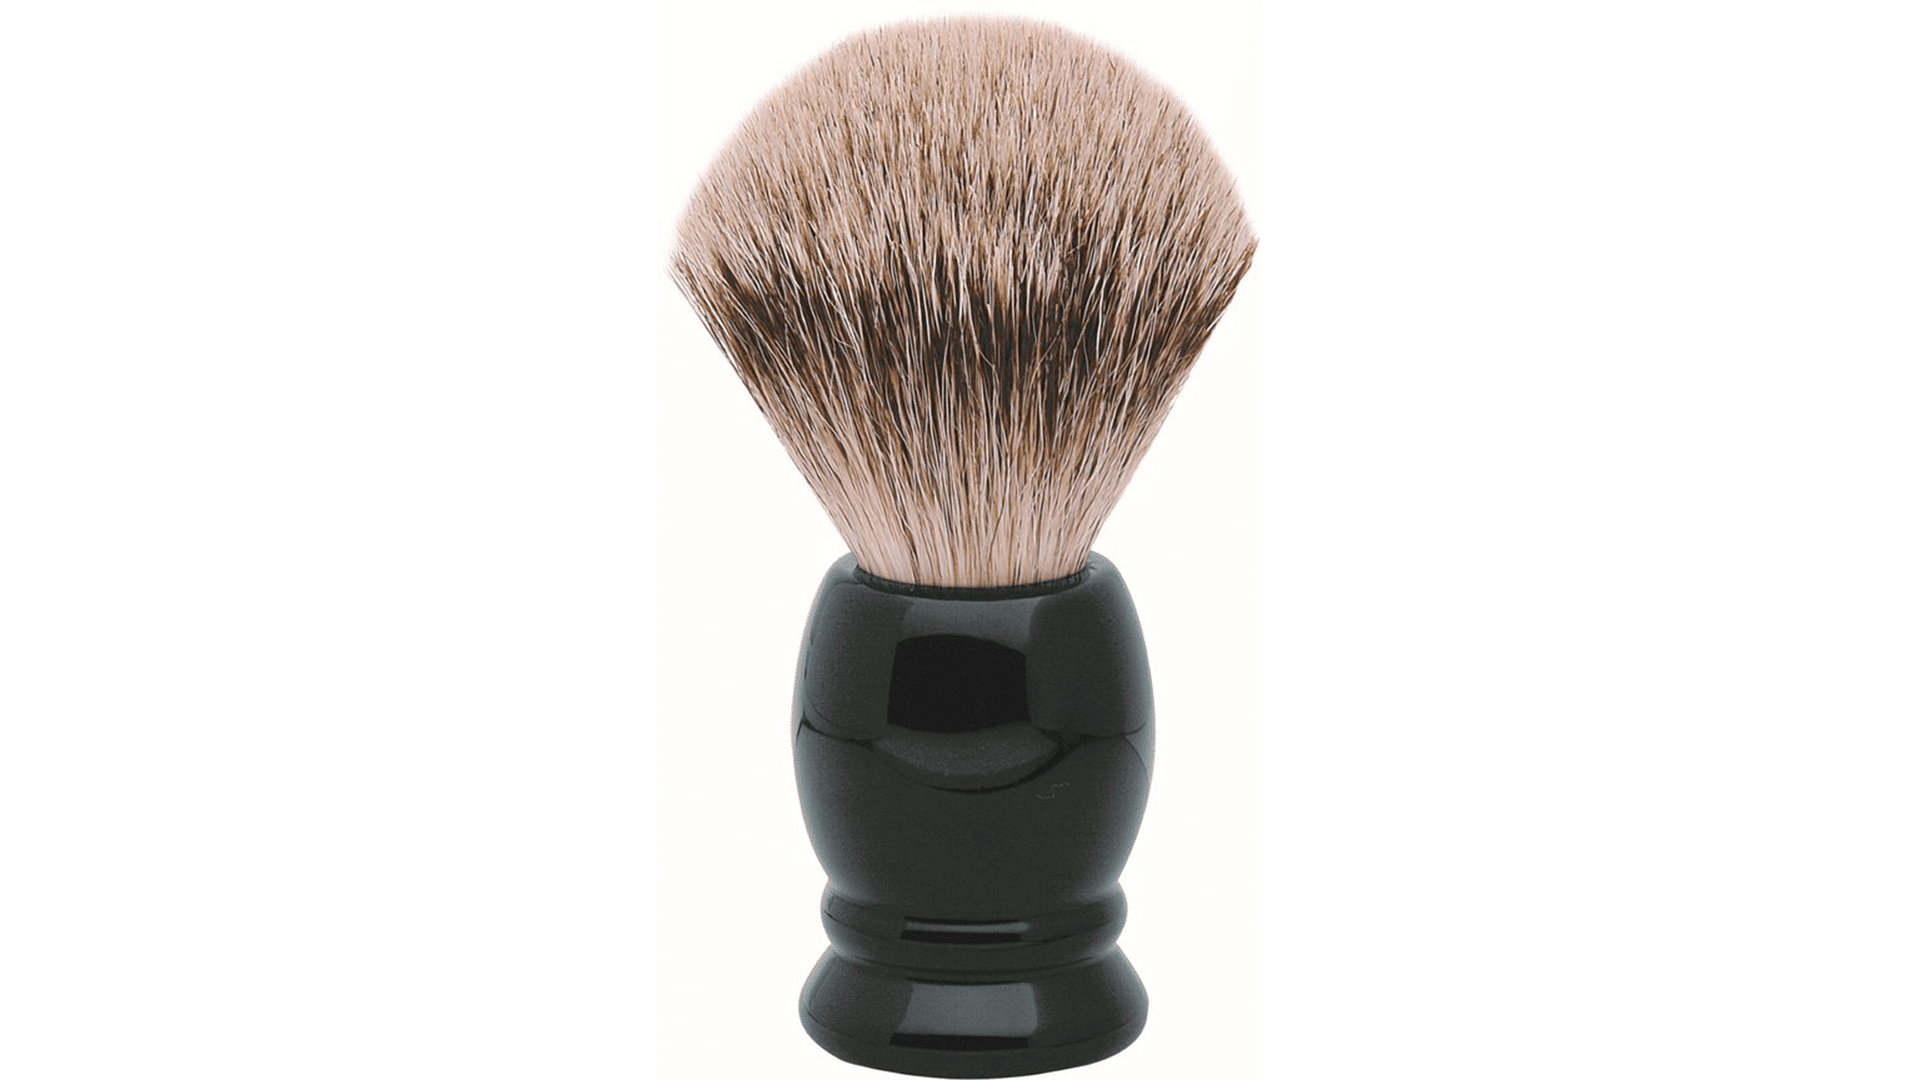 erbe-shaving-brush-badger-hair-high-grade resin-black-size-l-from-solingen